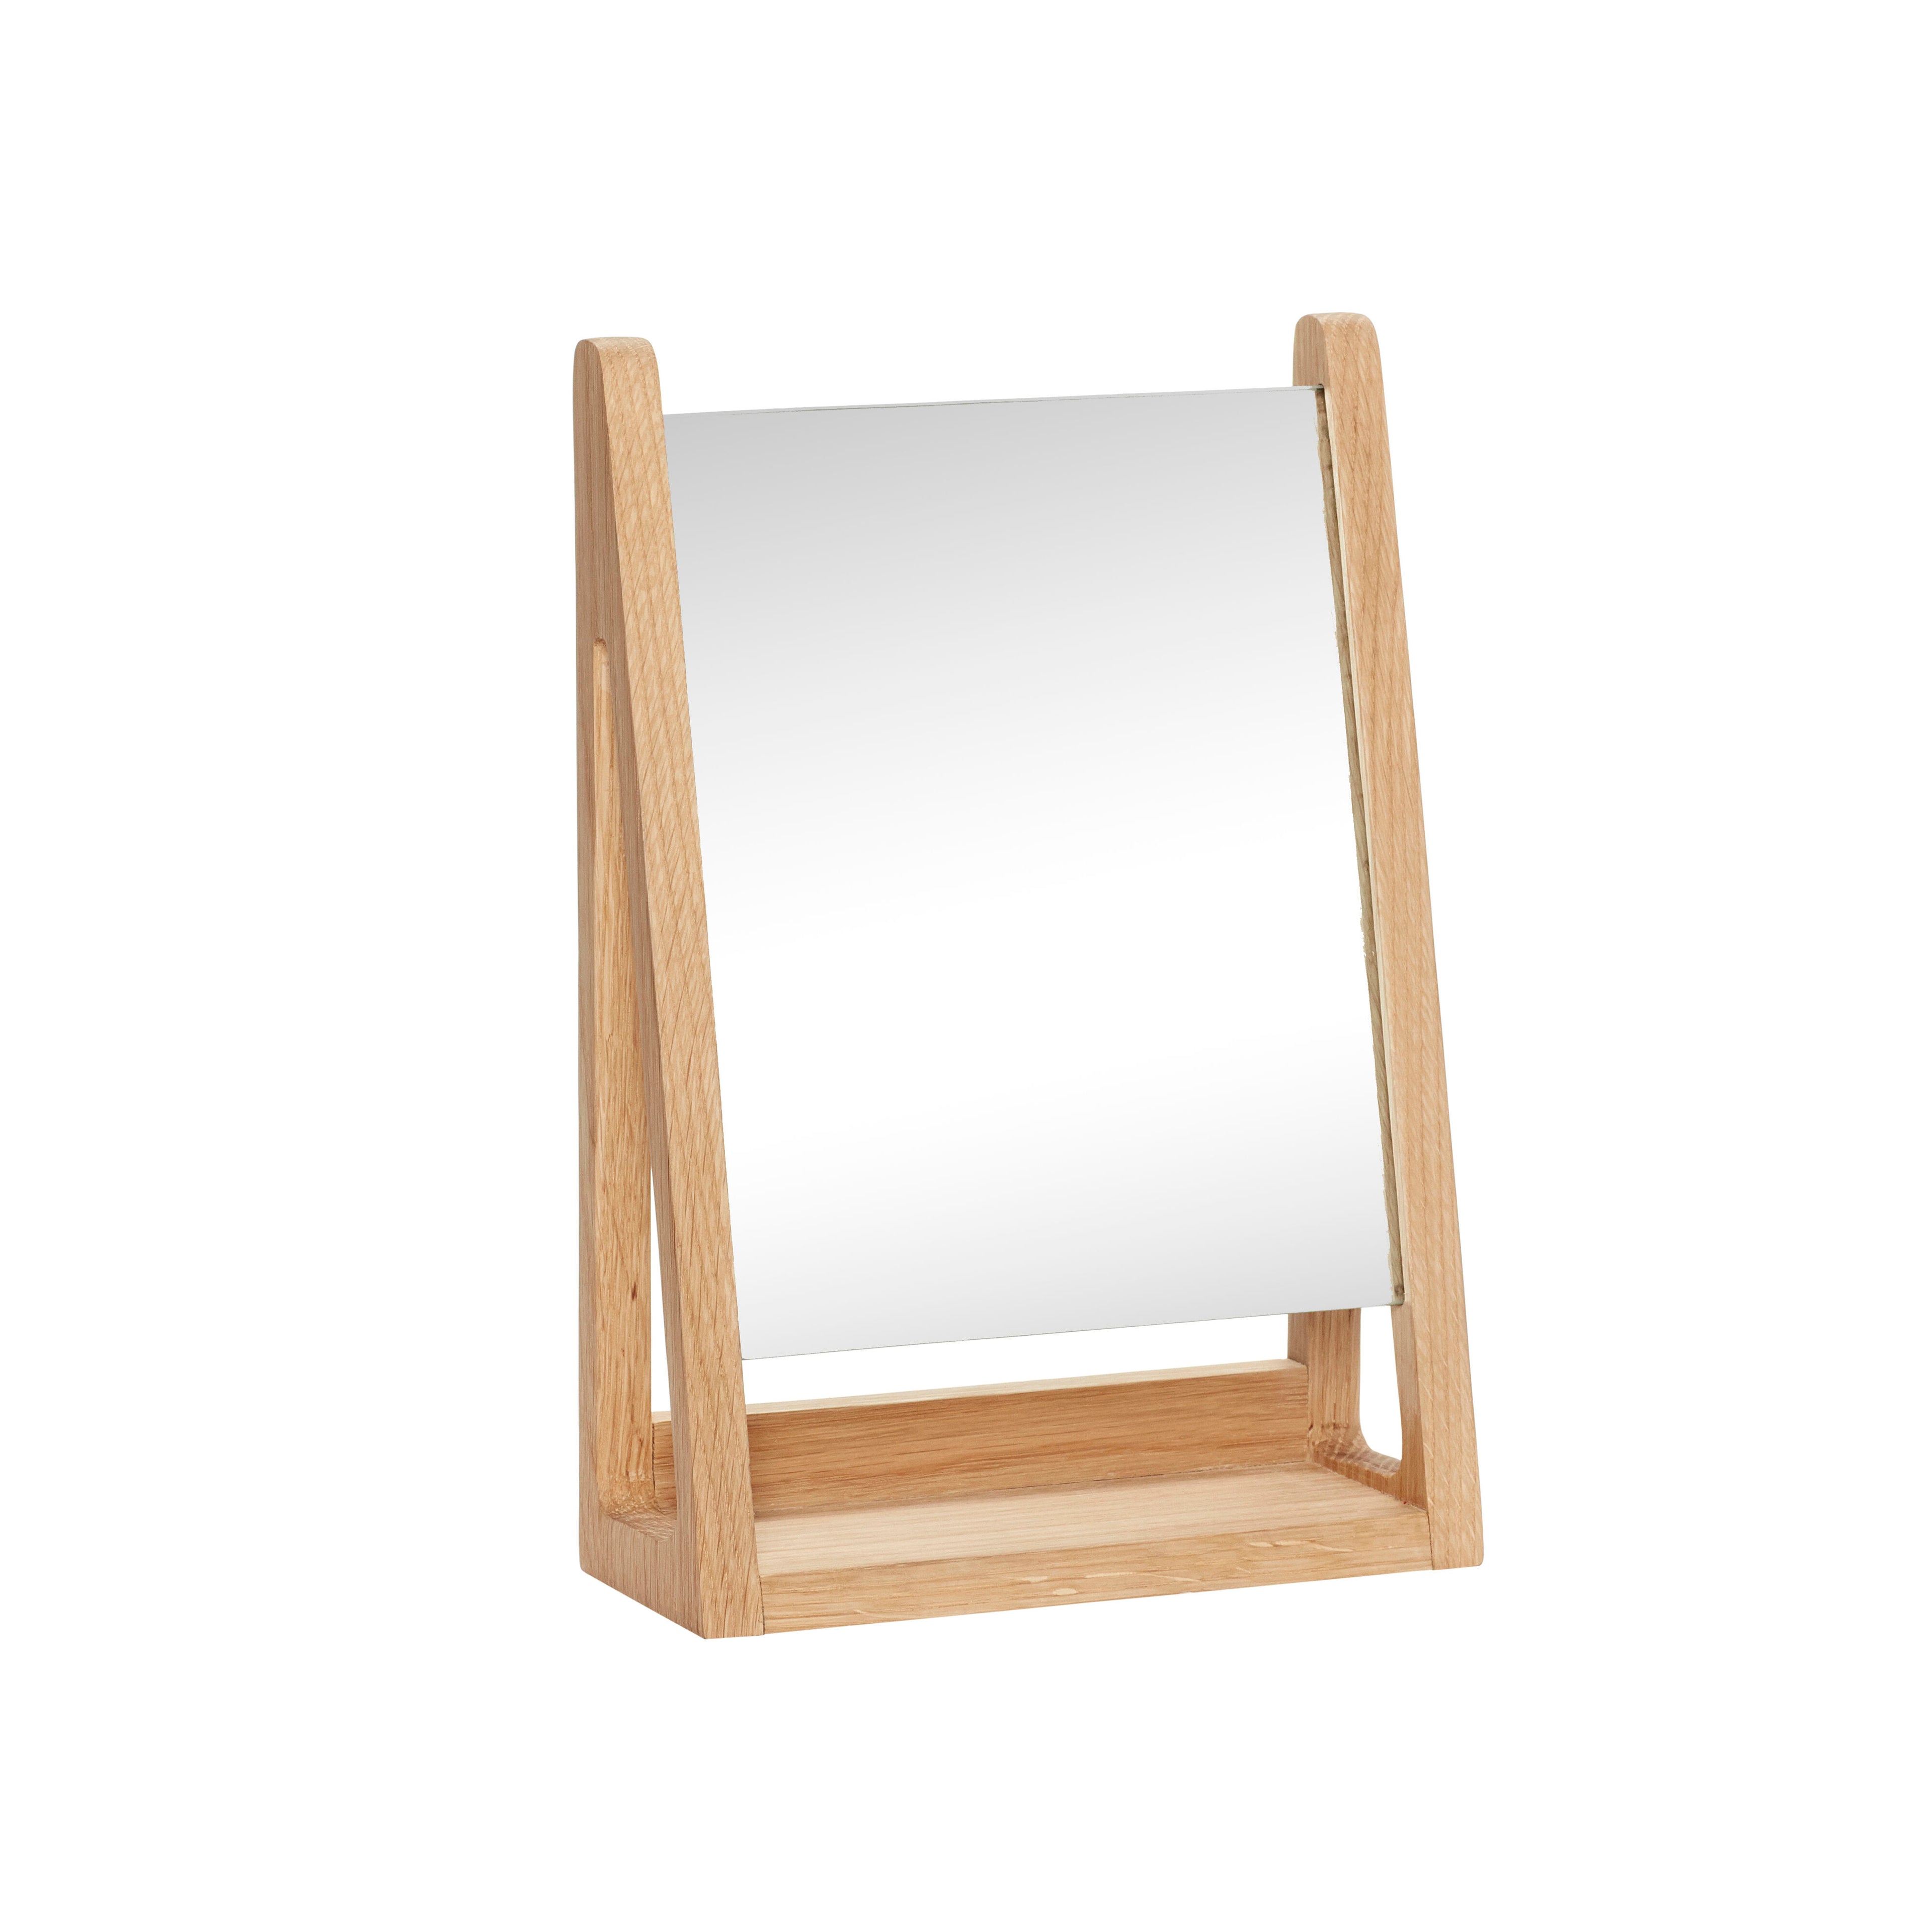 Hübsch Bordspejl, firkantet, FSC, natur - 22x9xh32cm - DesignGaragen.dk.